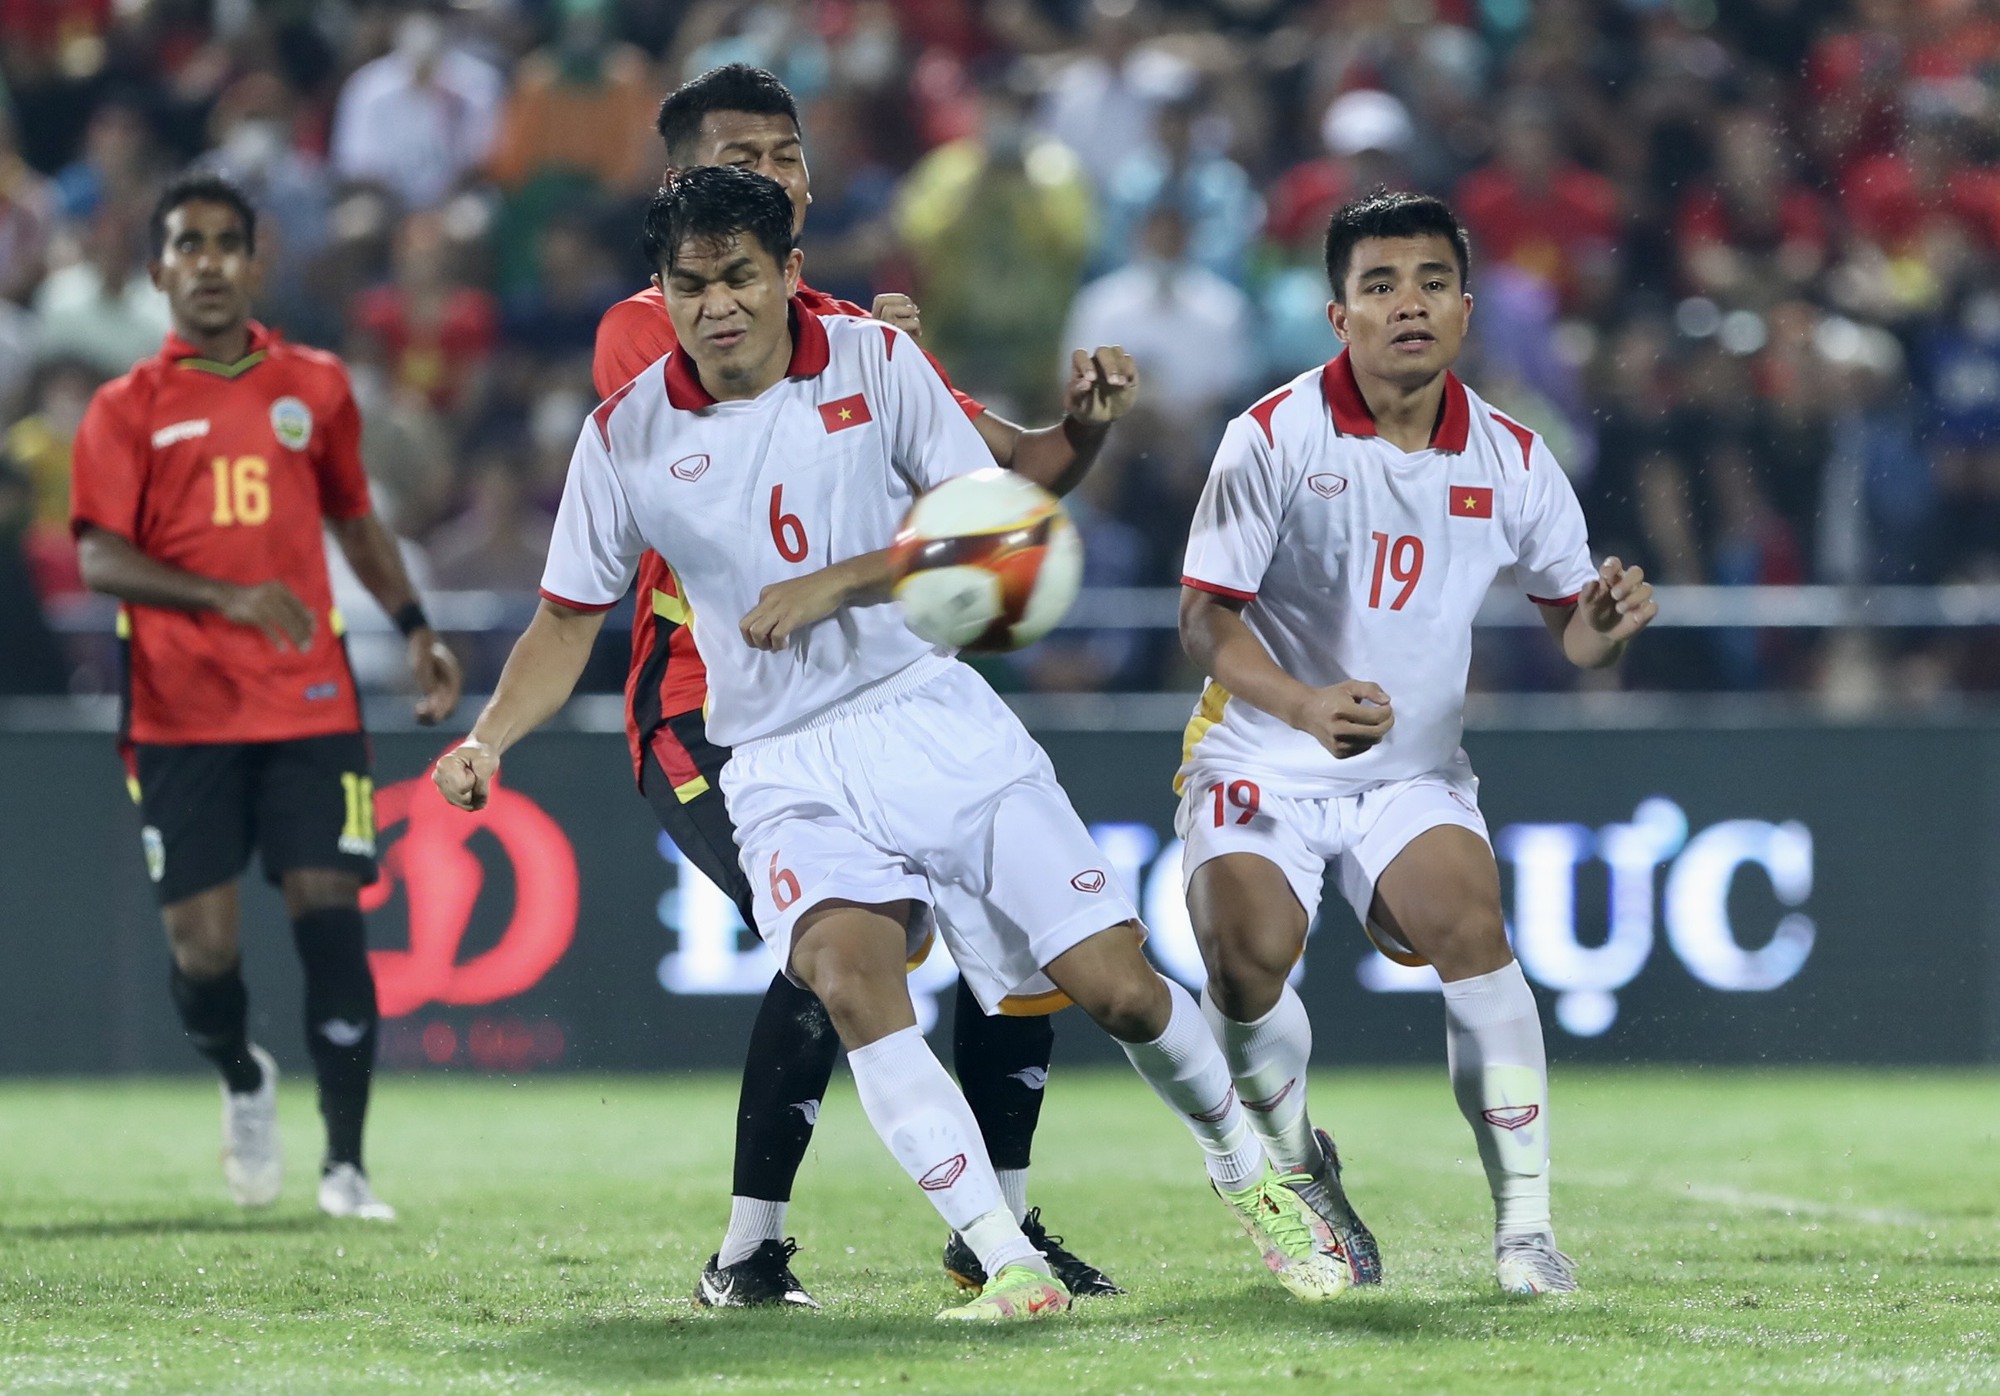 Thắng nhẹ nhàng U23 Timor Leste 2-0, U23 Việt Nam vào bán kết với vị trí nhất bảng - Ảnh 1.